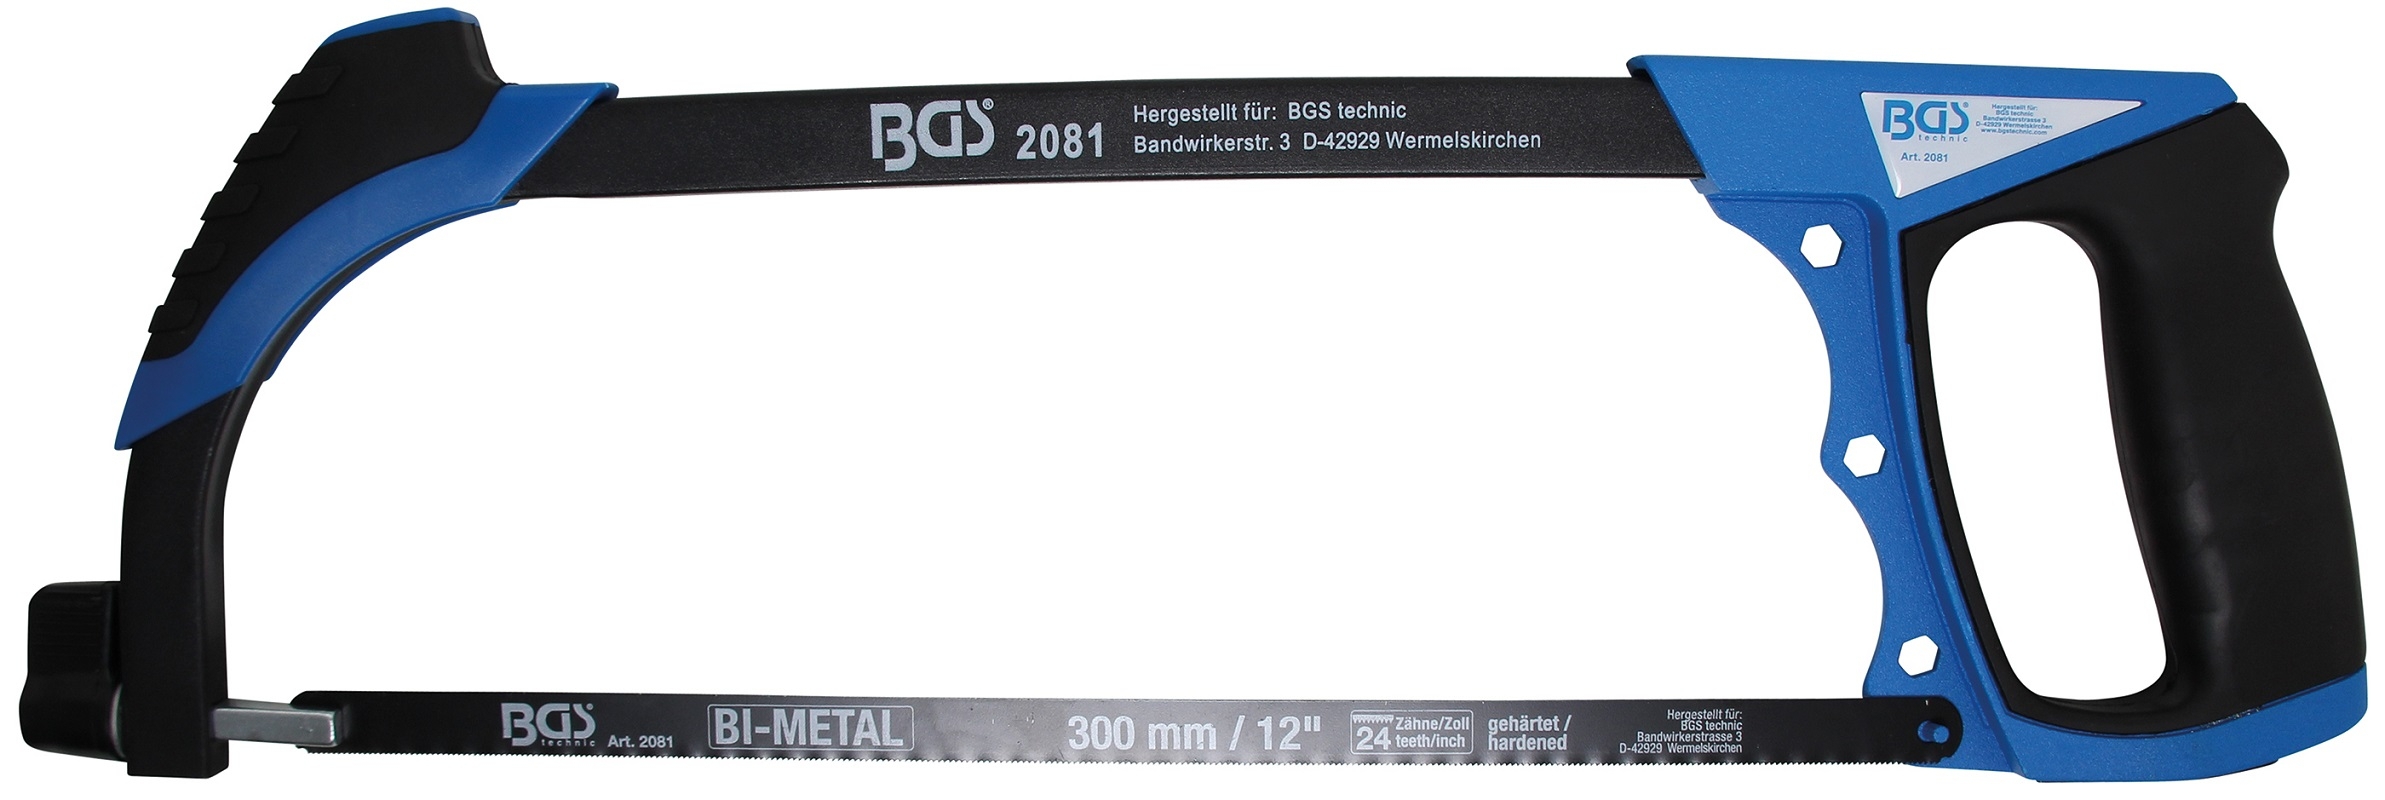 Aluminium-Sägebogen | inkl. HSS-Sägeblatt | 300 mm - BGS 2081